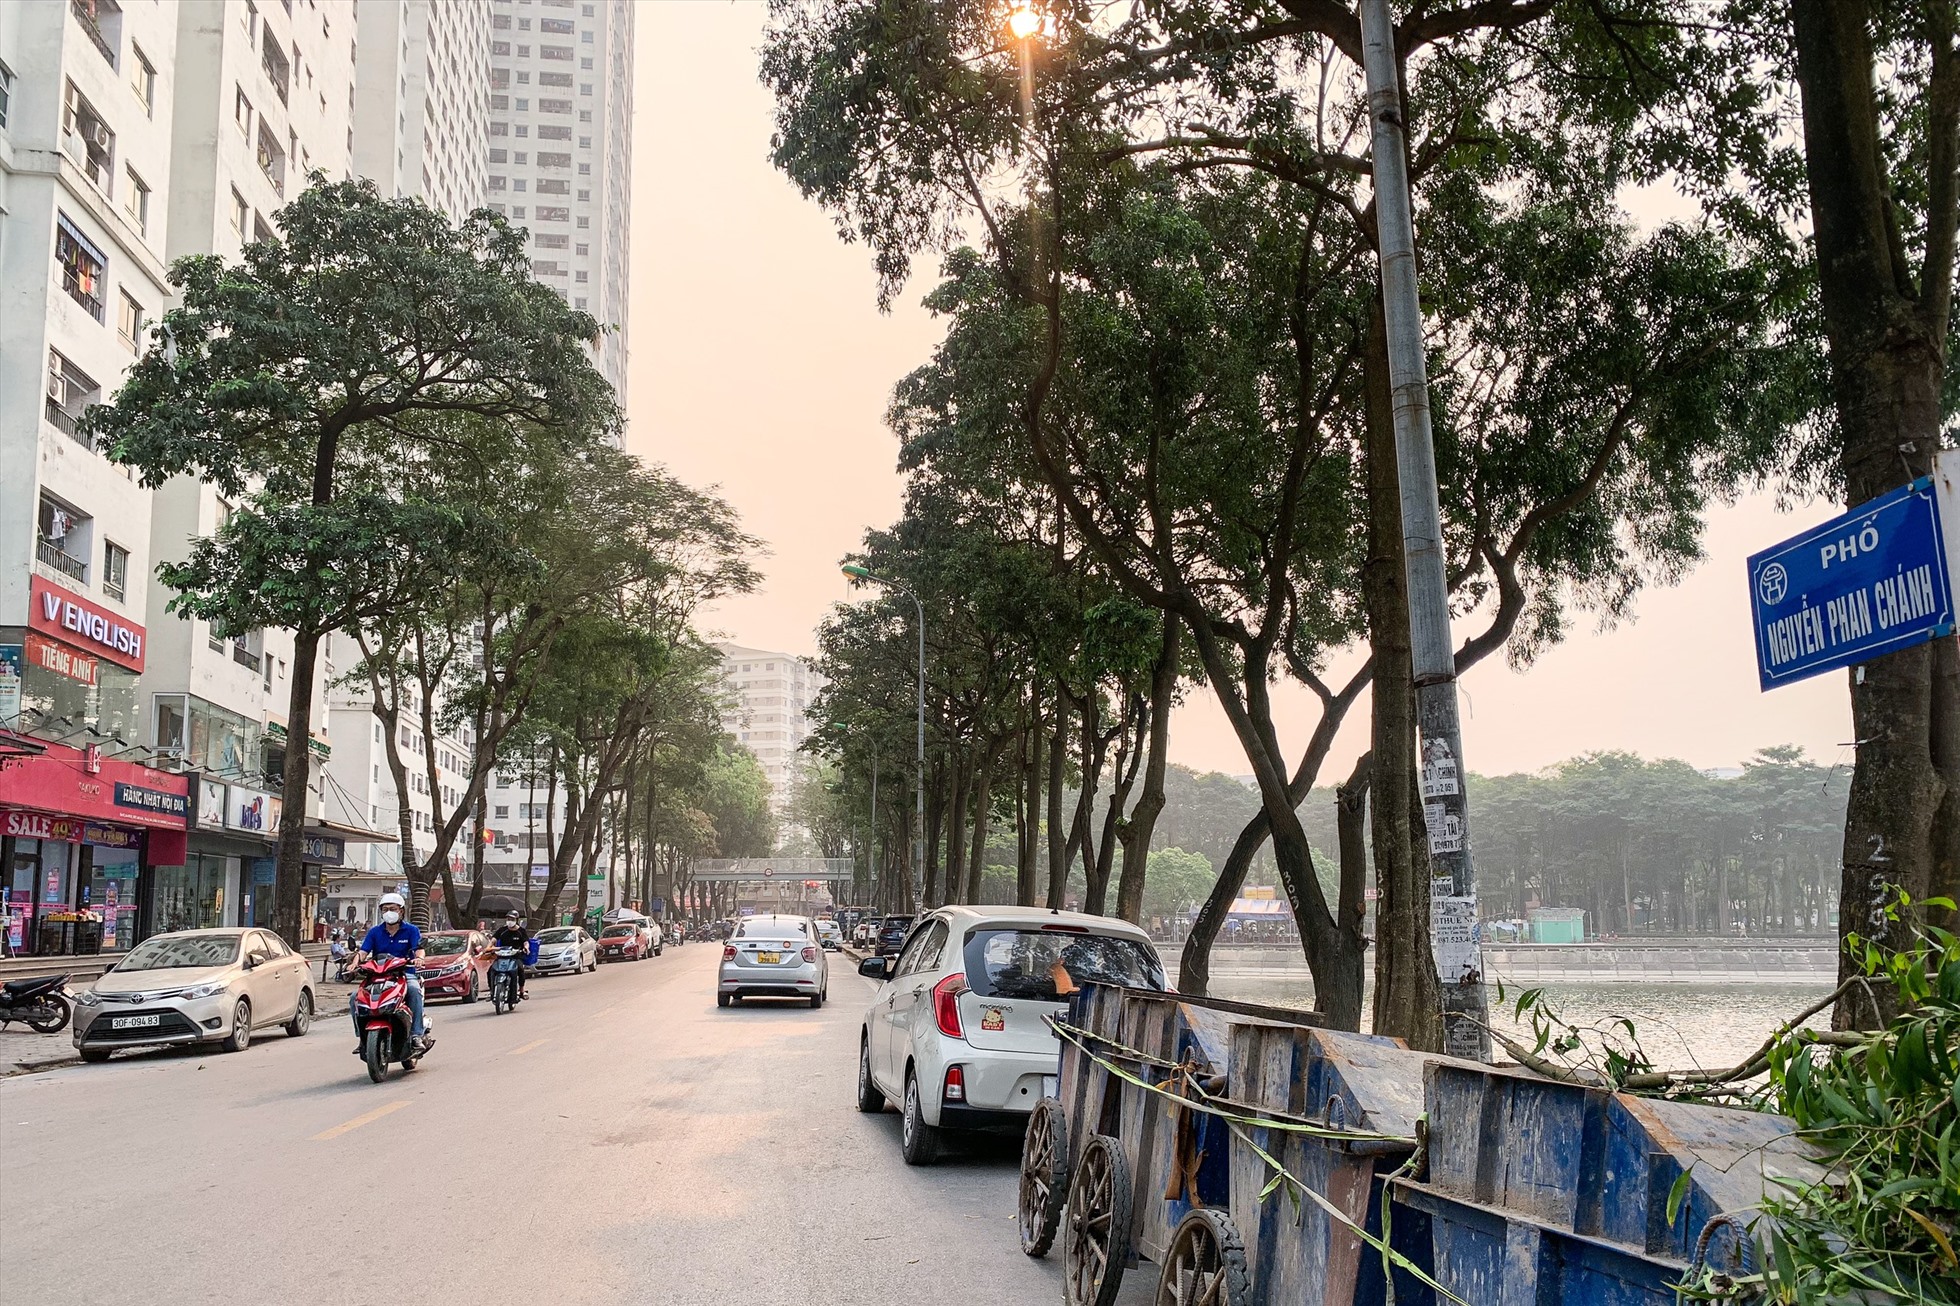 Hàng chục ô tô đỗ trên hè phố đường Nguyễn Phan Chánh chiếm gần hết phần đường dành cho người đi bộ. Ảnh: Thu Hiền